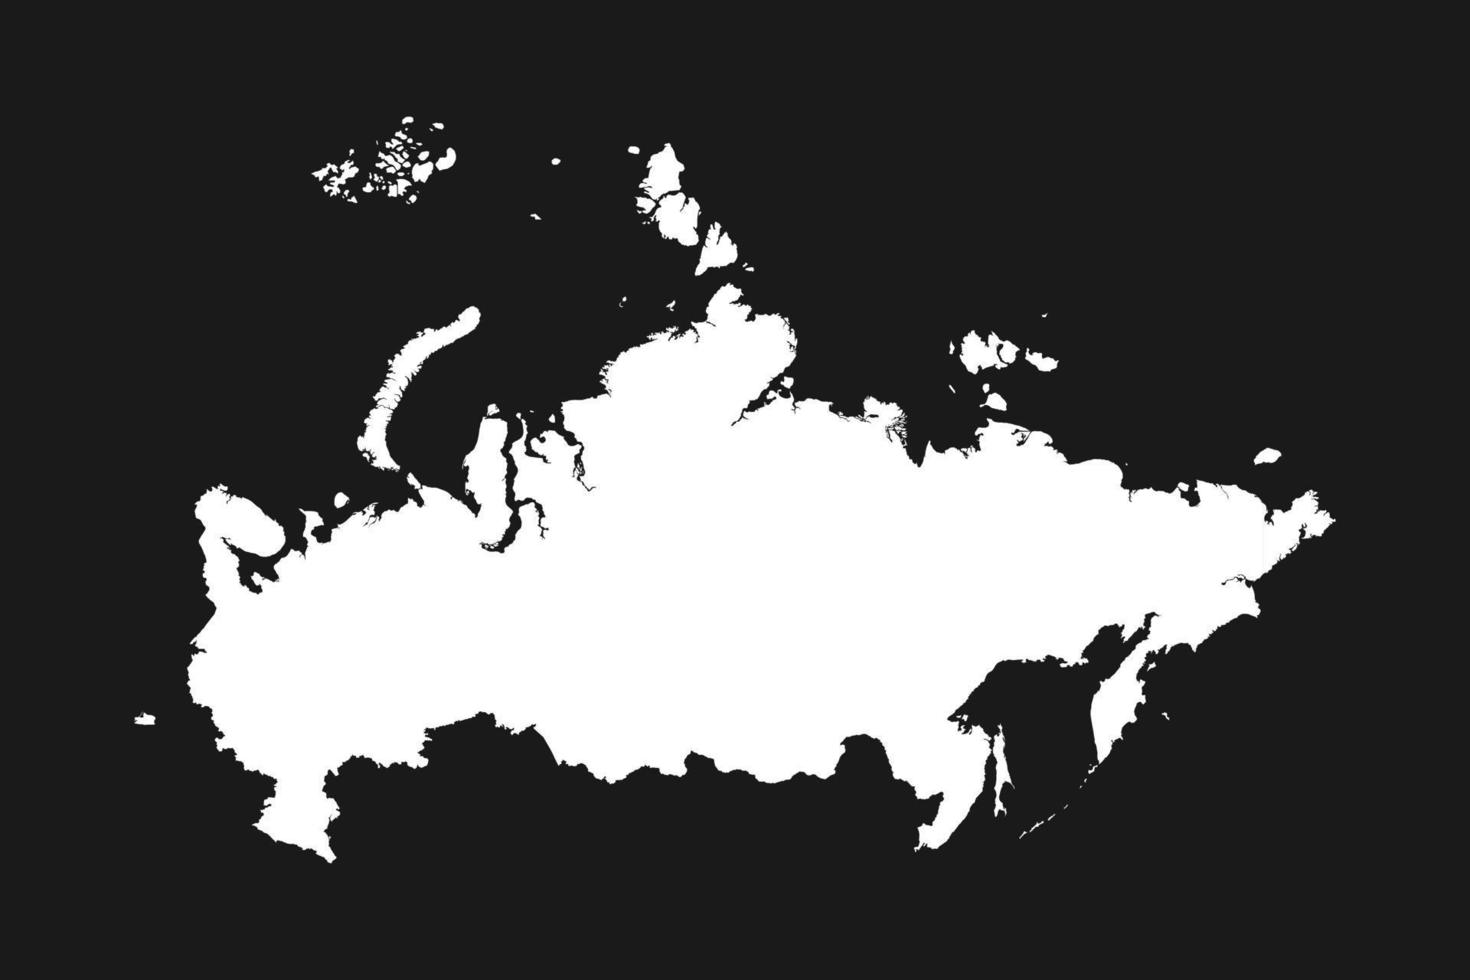 mappa della russia illustrazione vettoriale su sfondo nero